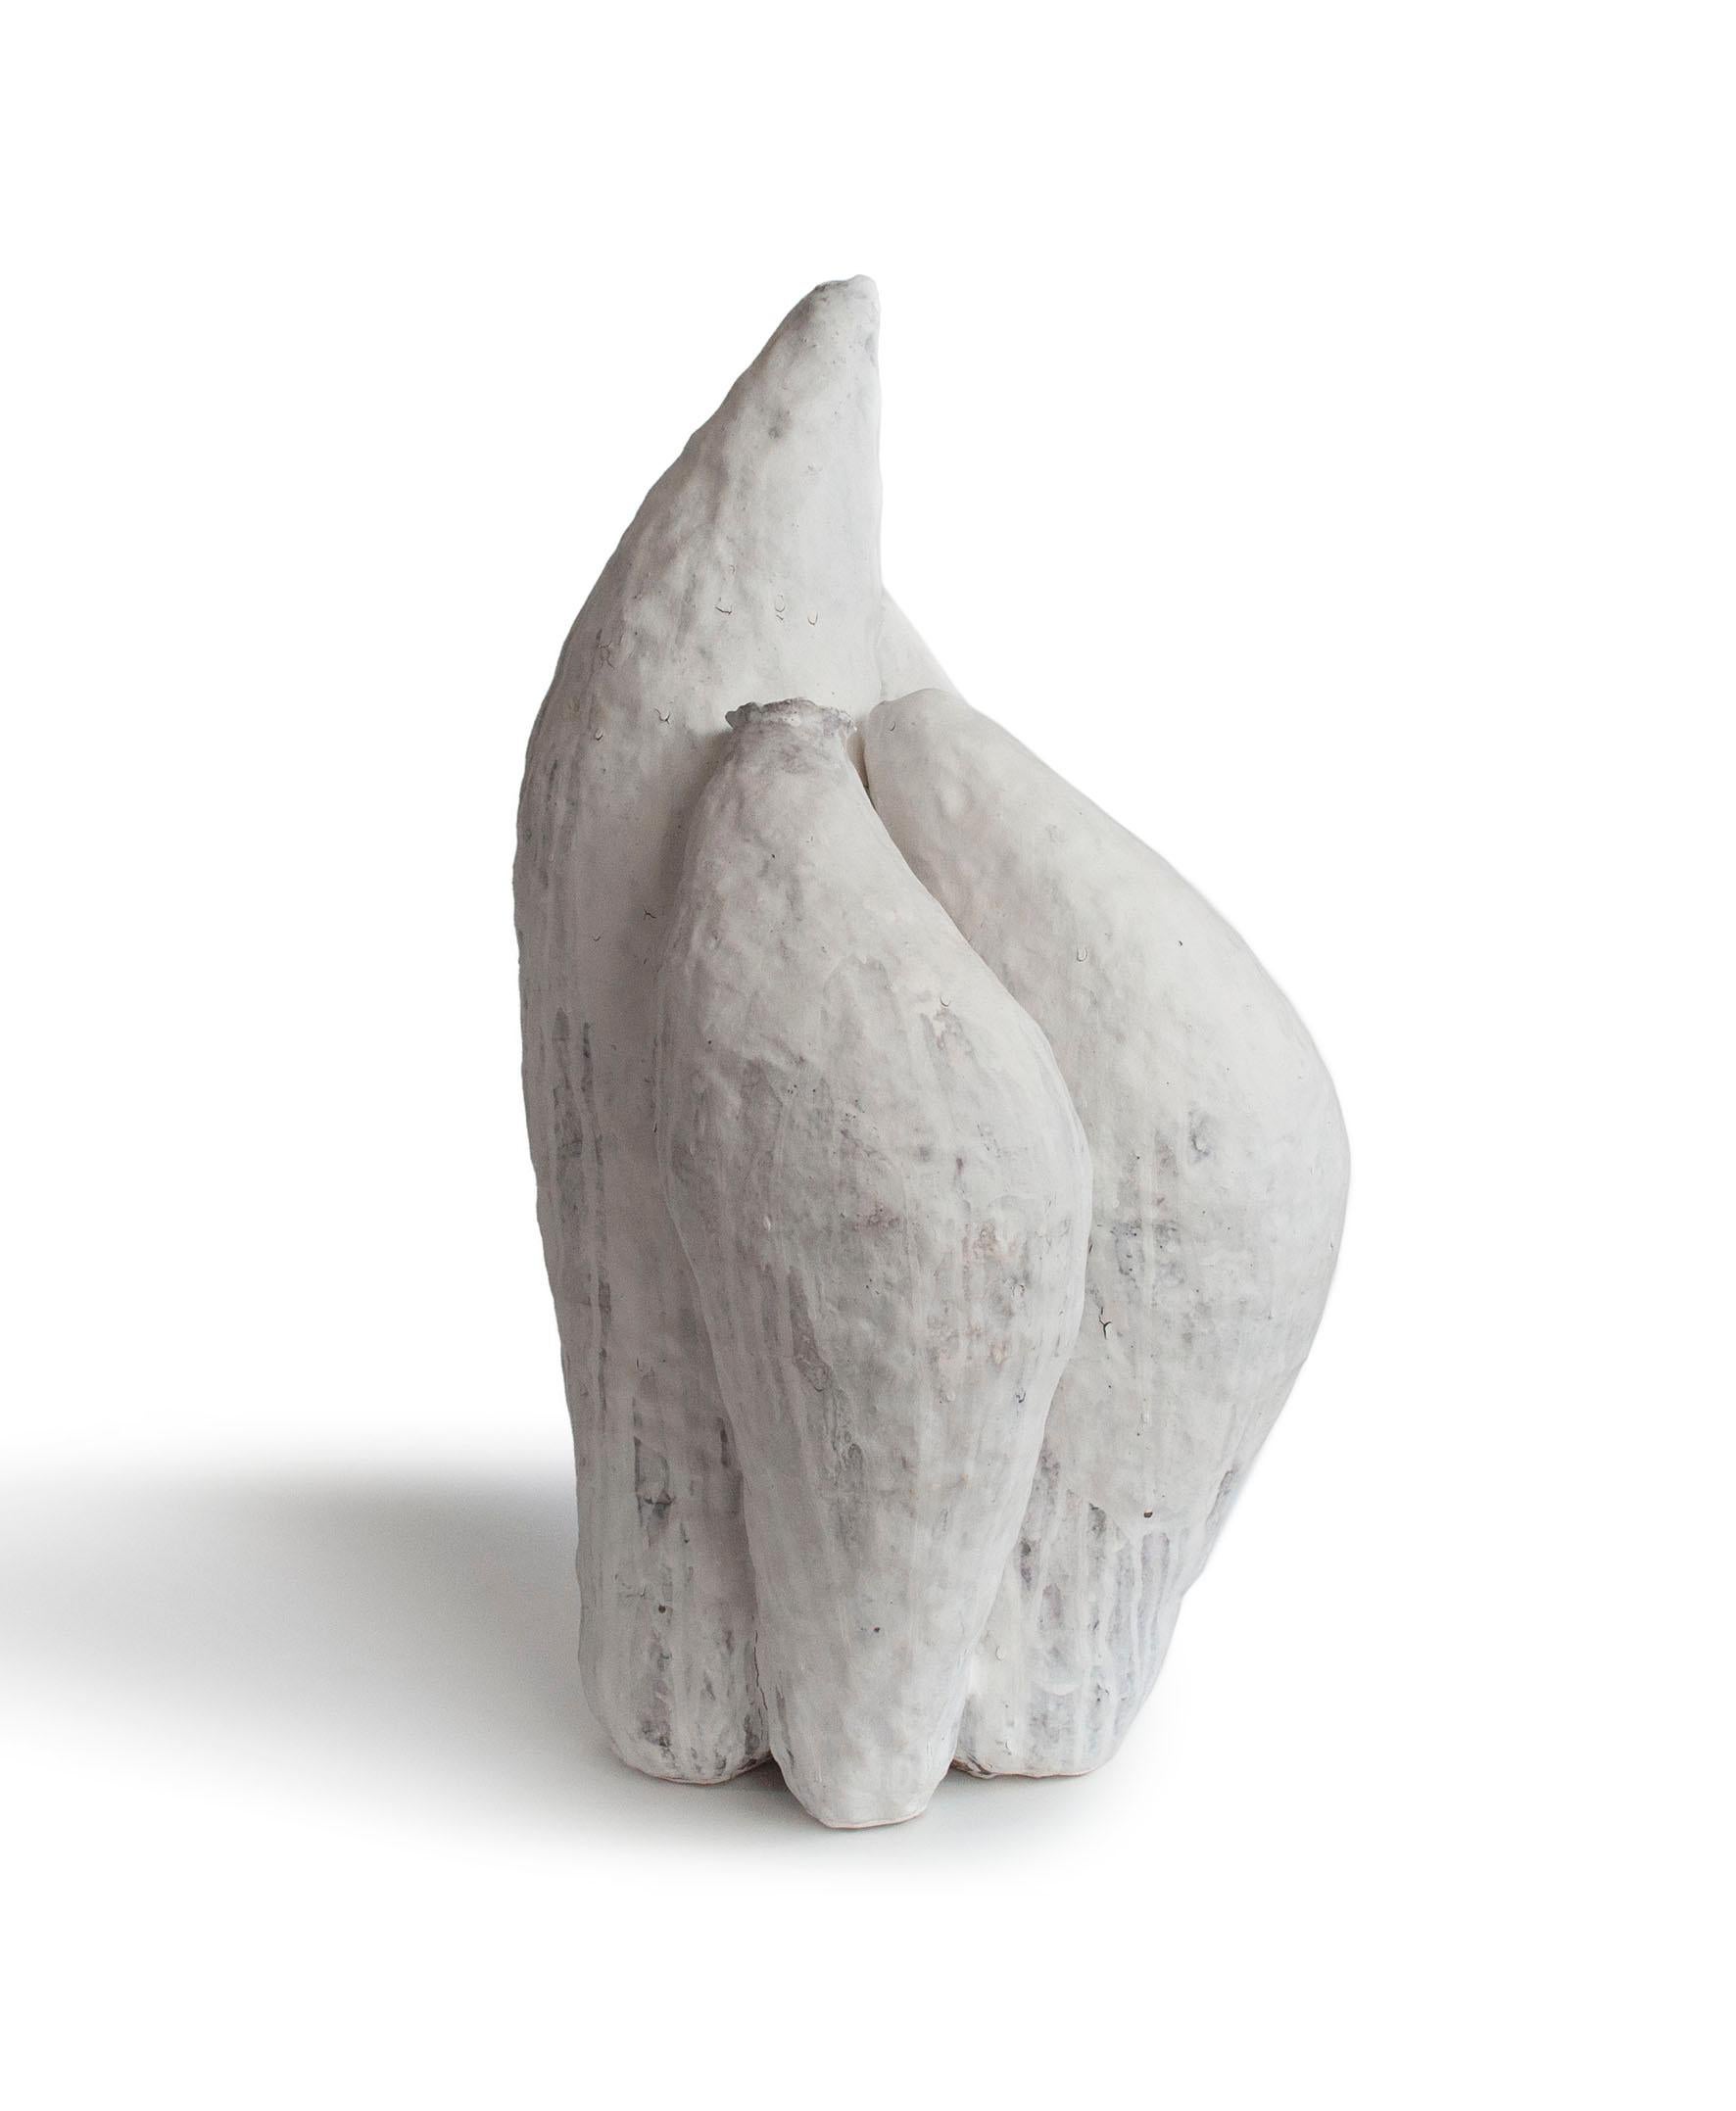 Weiße Keramik Kunstwerk signiert von Jojo Corväiá
Serie Berber
Maße: H 80 x B 42 x T 50 cm
MATERIALIEN: Ton, Porzellan, natürliche Pigmente. 

Jojo Corväiá: 
Im Grunde genommen geht es mir nicht um Perfektion.
Das Fehlen von Fehlern und